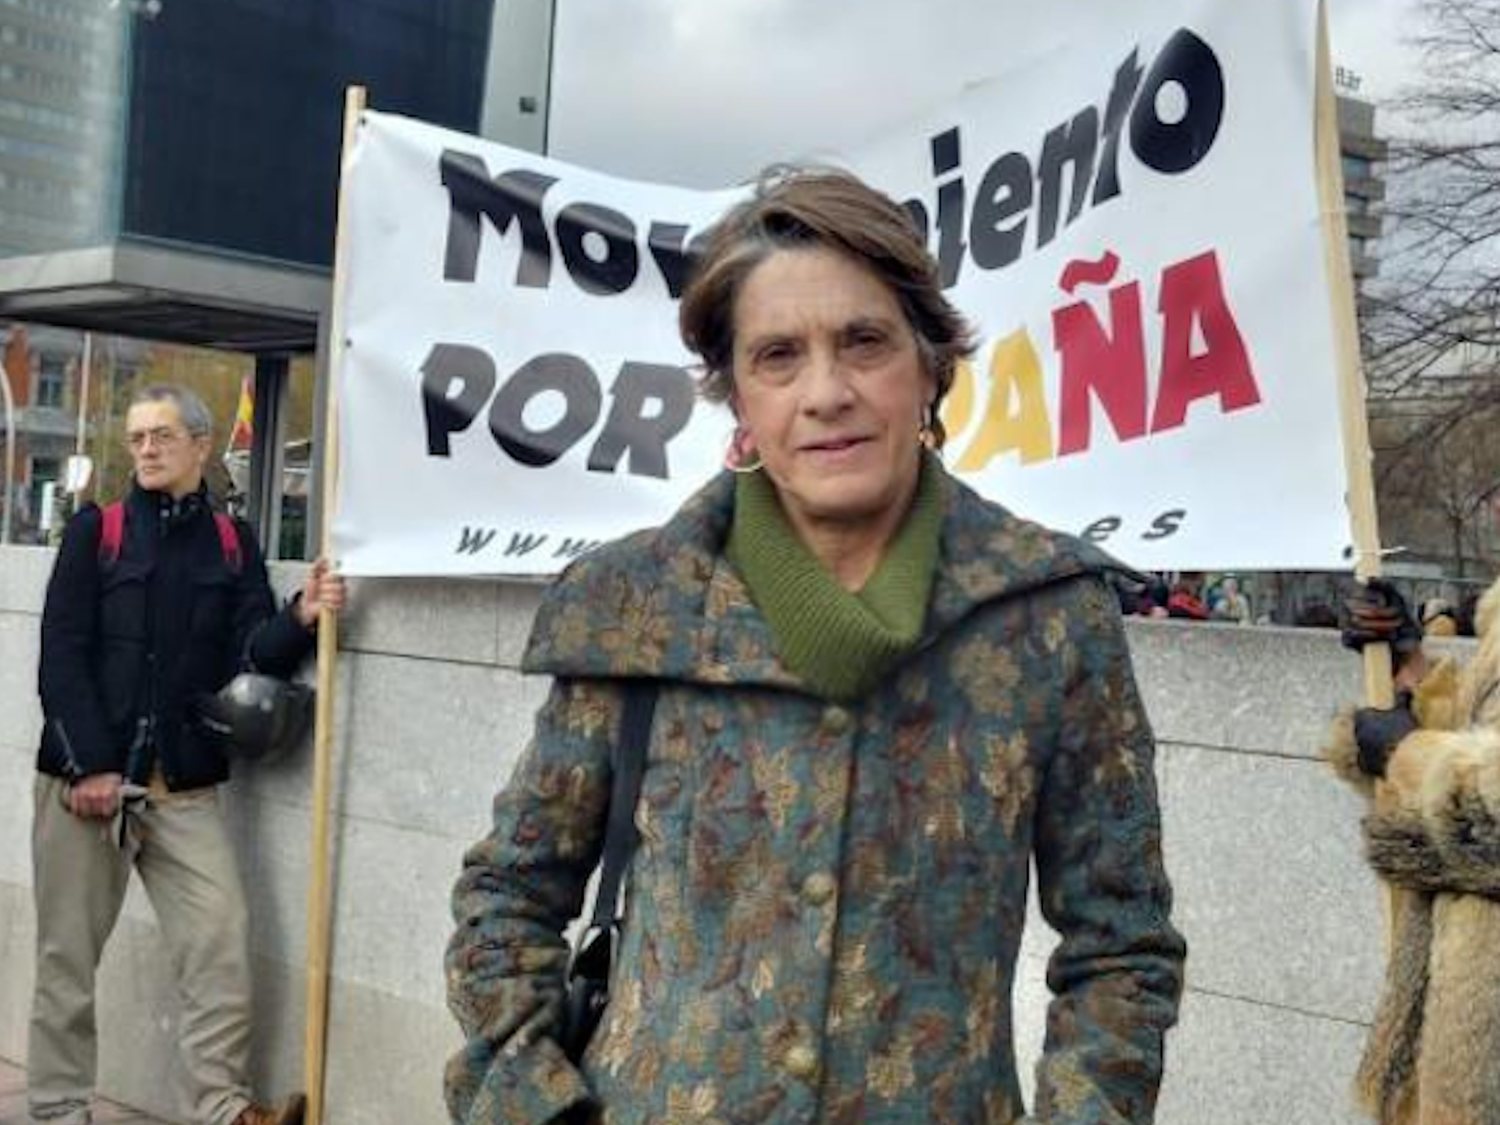 La franquista Pilar Gutiérrez: "Hay gente de mi grupo dispuesta a asesinar"